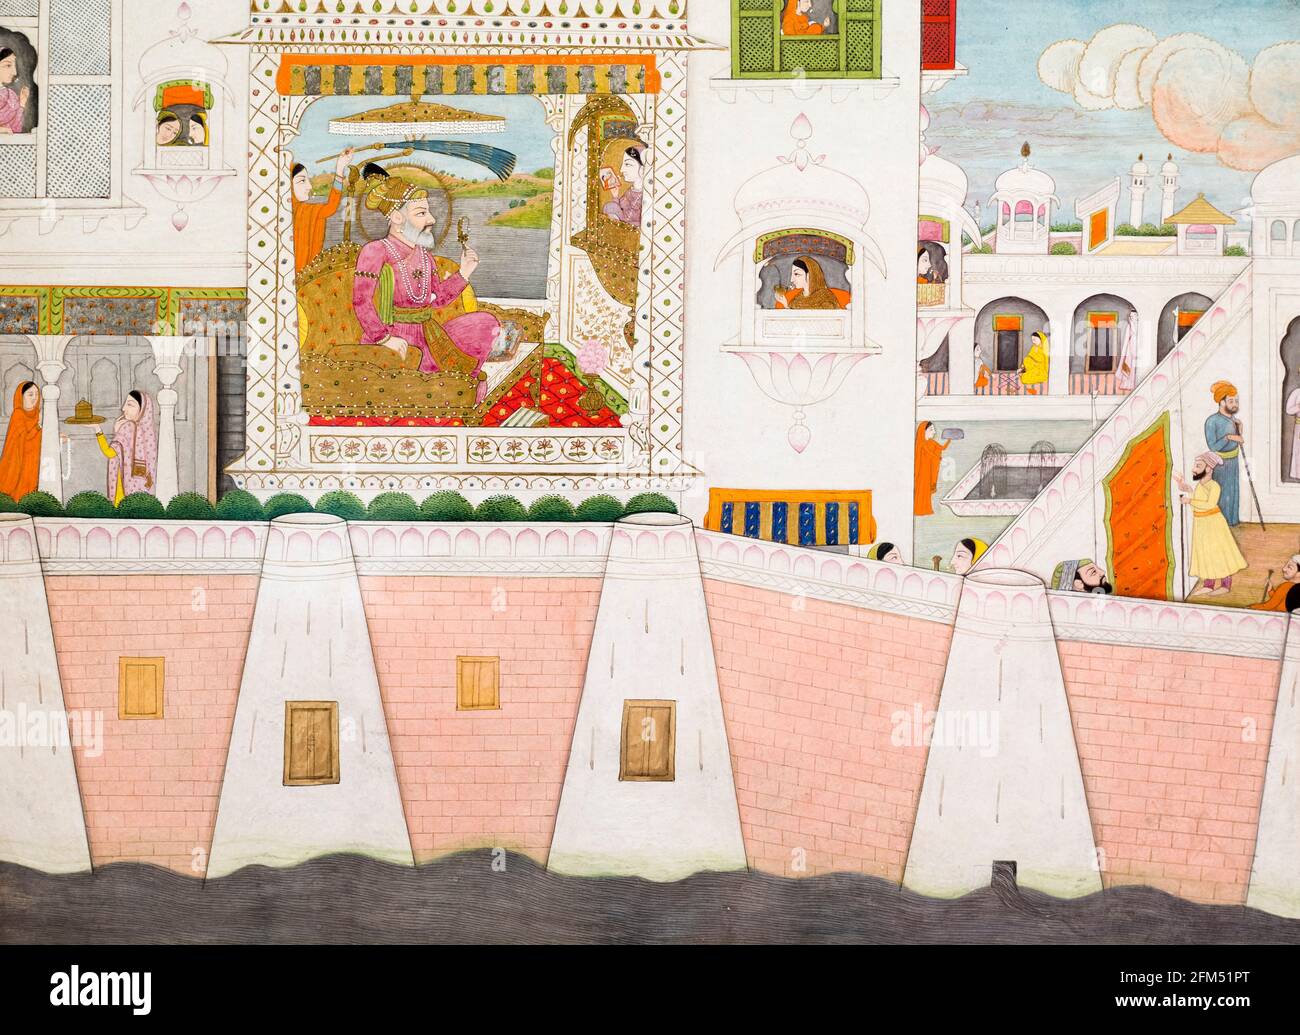 Scène du palais avec Shah Jahan (1592-1666), cinquième empereur moghol, peinture 1700-1725 Banque D'Images